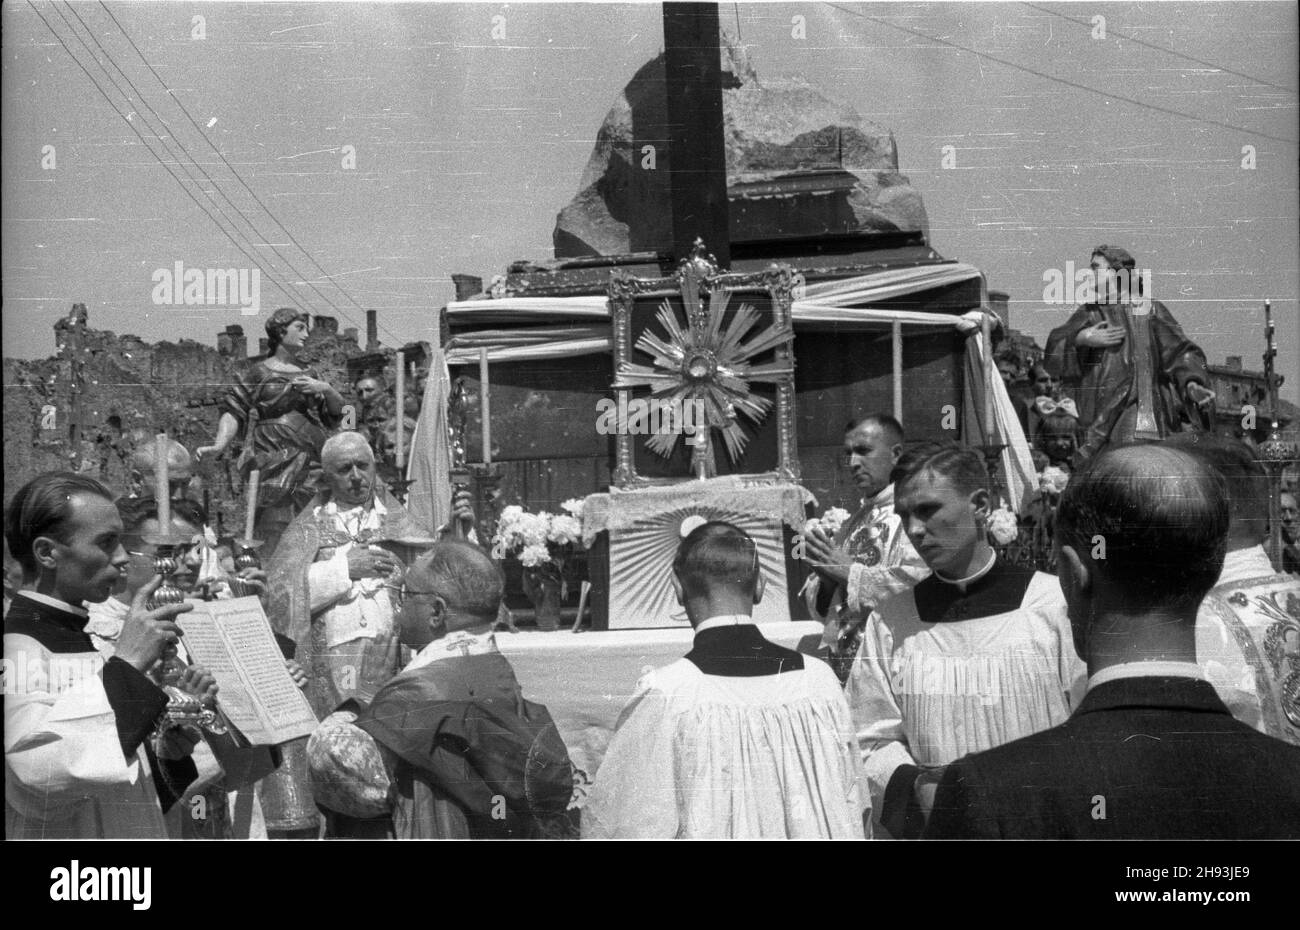 Warszawa, 1947-06-05. Procesja Bo¿ego Cia³a przed o³tarzem w miejscu kolumny Zygmunta III Wazy na placu Zamkowym. Nz. ksi¹dz odczytuje Ewangeliê na cztery strony œwiata, z lewej strony o³tarza kardyna³ August Hlond.  ps/gr  PAP      Warsaw, June 5, 1947. Corpus Cristi procession at the altar in the place of the Zygmunt III Waza Column on the Zamkowy Square. Pictured: a priest reads Gospel to the four cardinal points, Cardinal August Hlond (left).   ps/gr  PAP Stock Photo